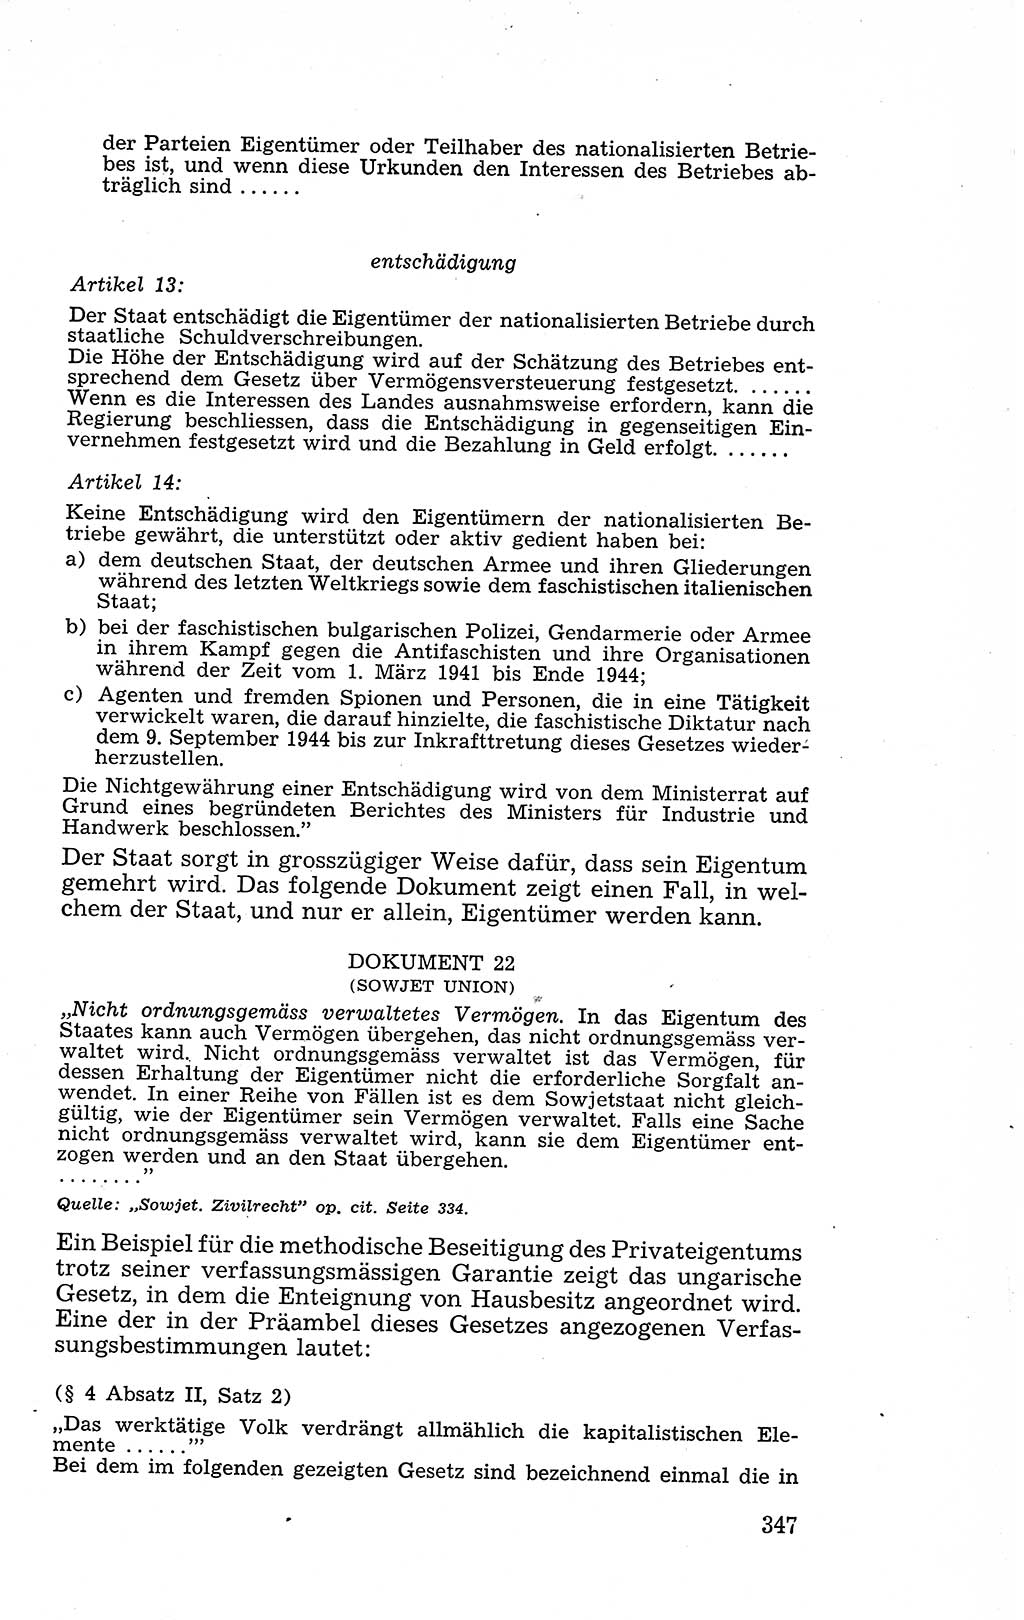 Recht in Fesseln, Dokumente, Internationale Juristen-Kommission [Bundesrepublik Deutschland (BRD)] 1955, Seite 347 (R. Dok. IJK BRD 1955, S. 347)